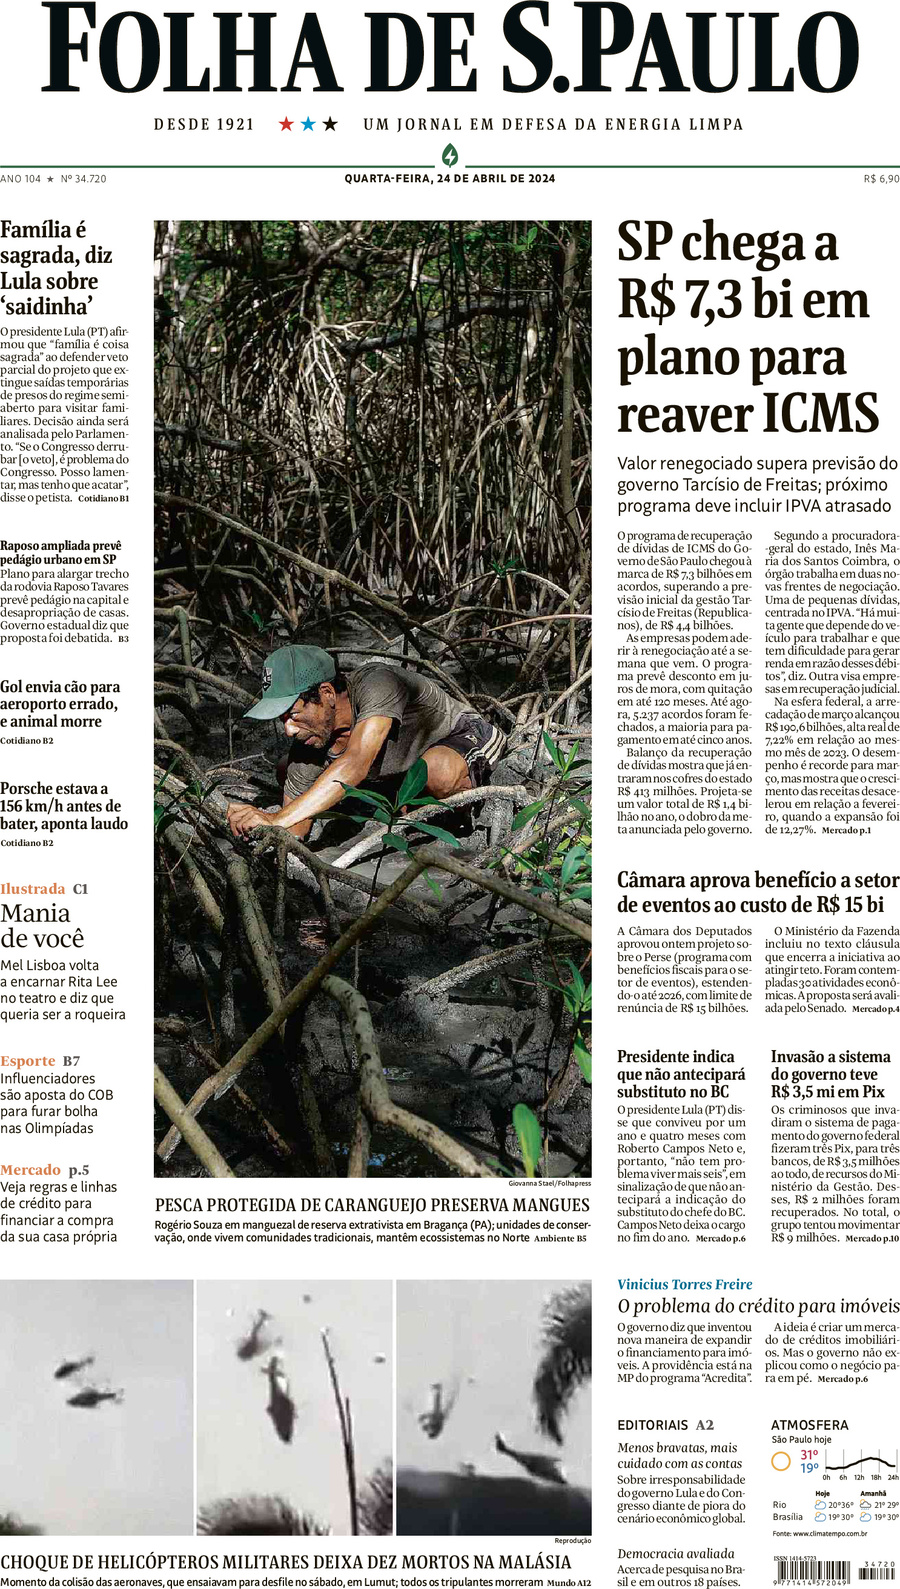 Folha de S.Paulo - Front Page - 04/25/2024